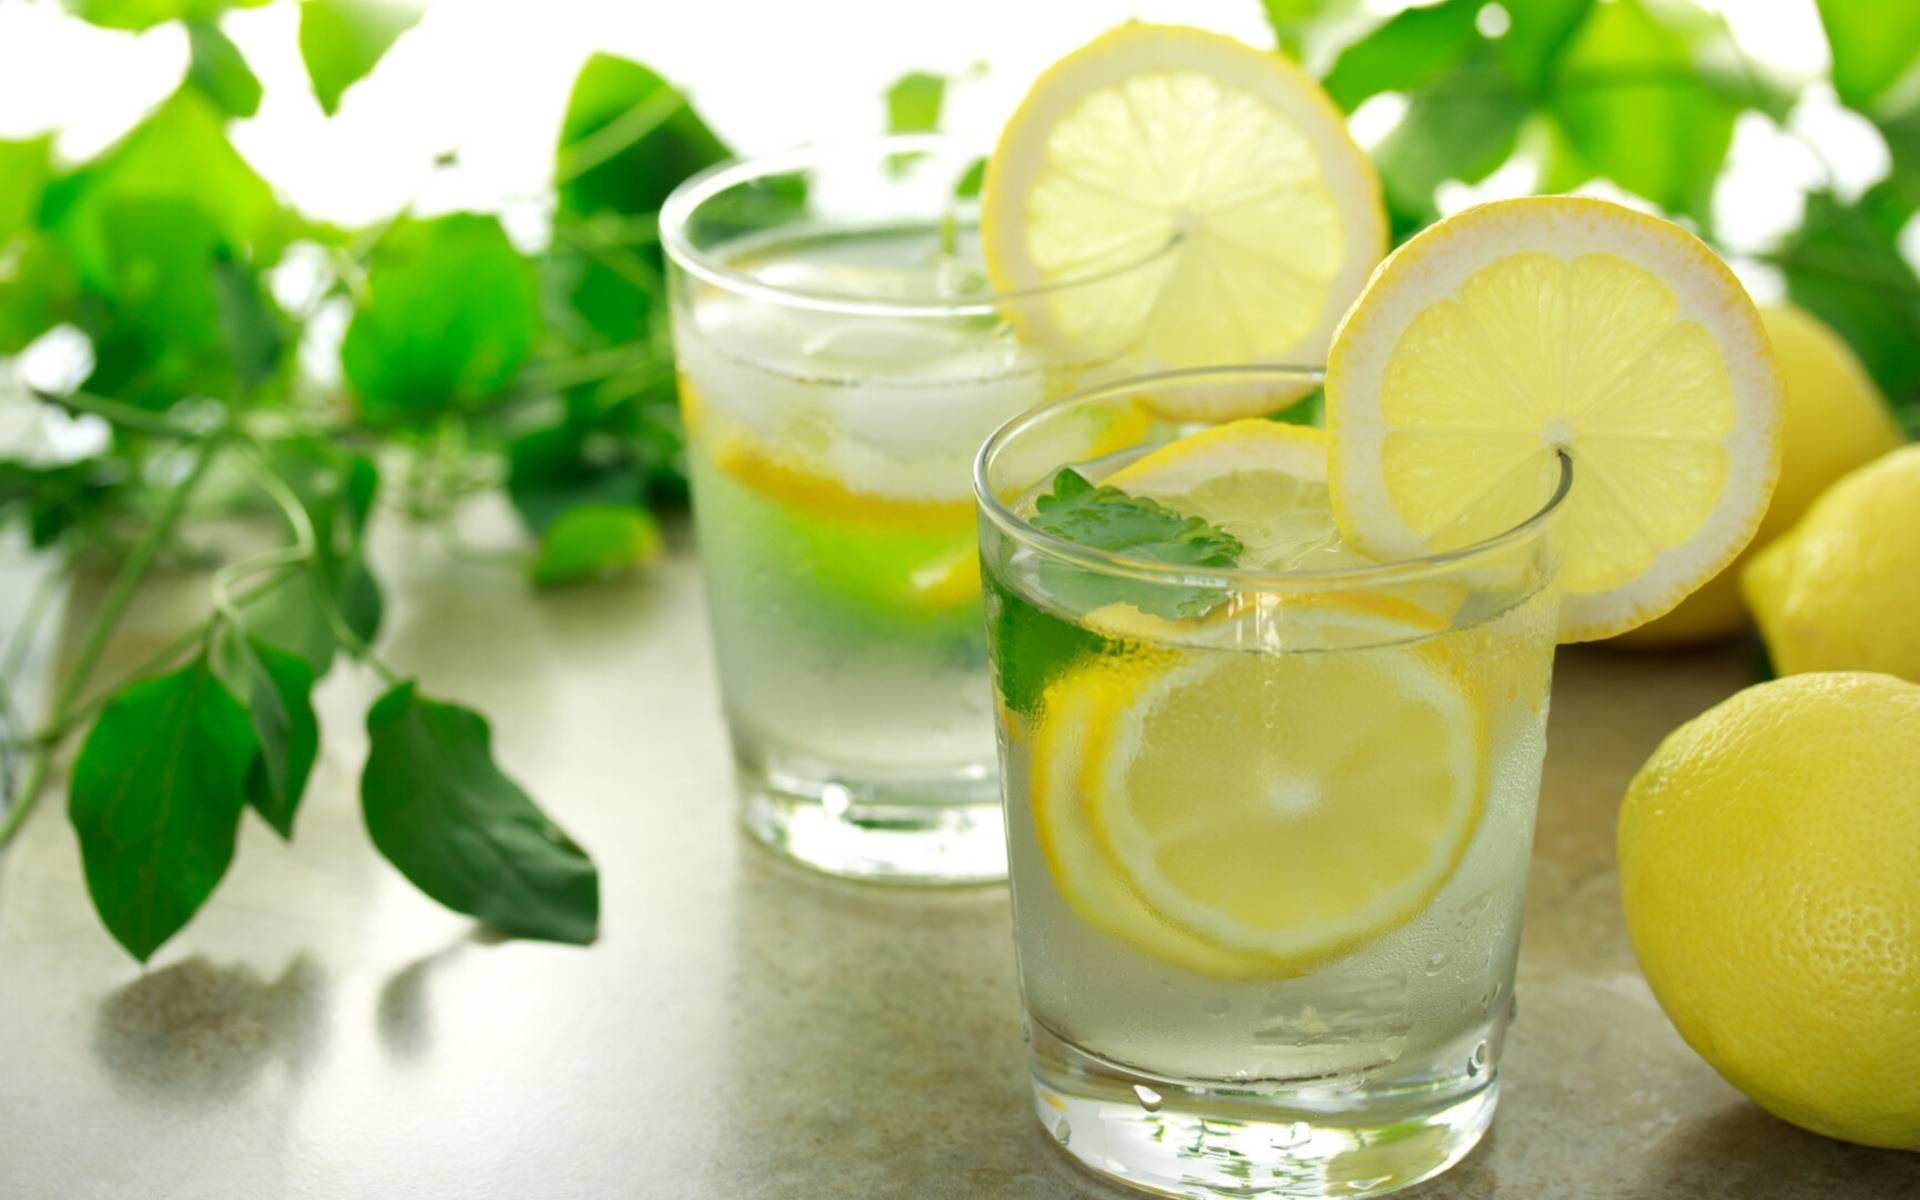 lemonade-lemons-a-glass-of-lemonade-mint-leaves.jpg